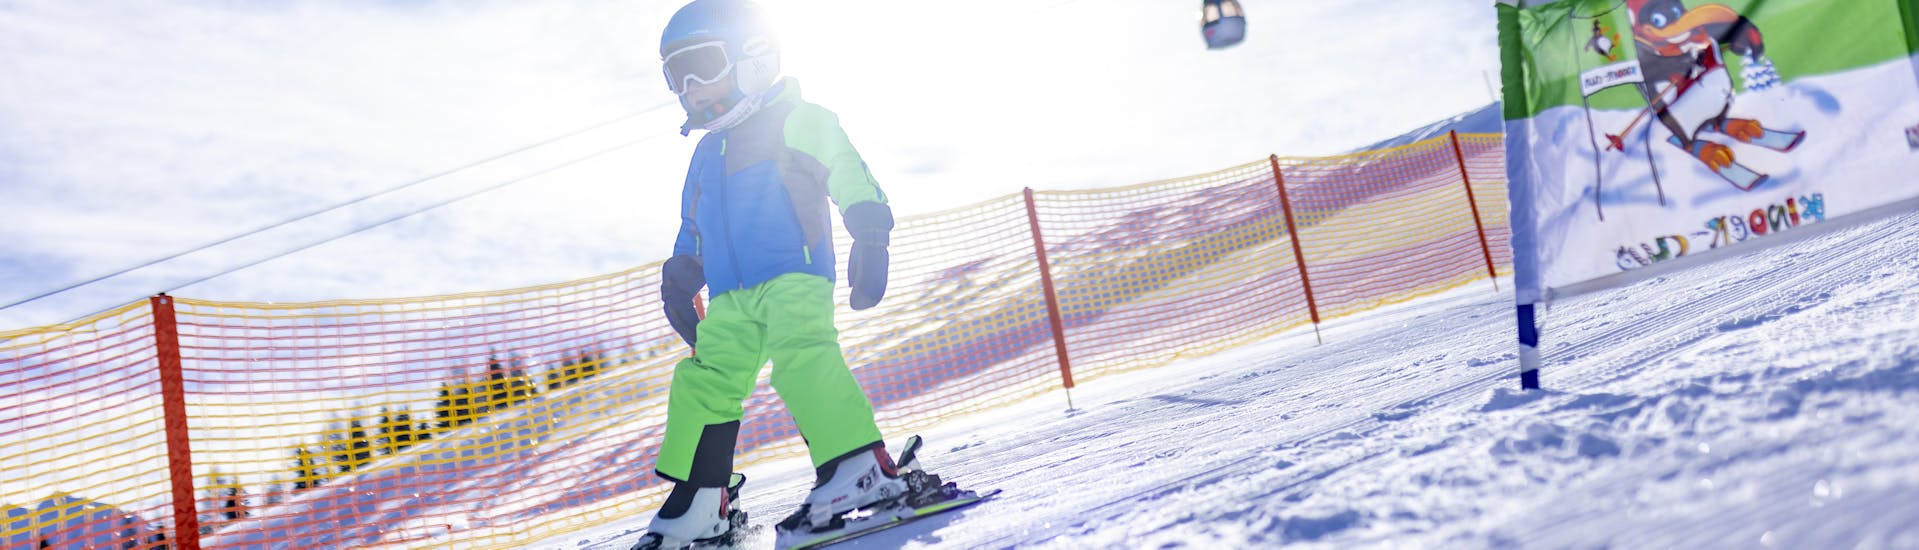 Lezioni di sci per bambini a partire da 3 anni per principianti.